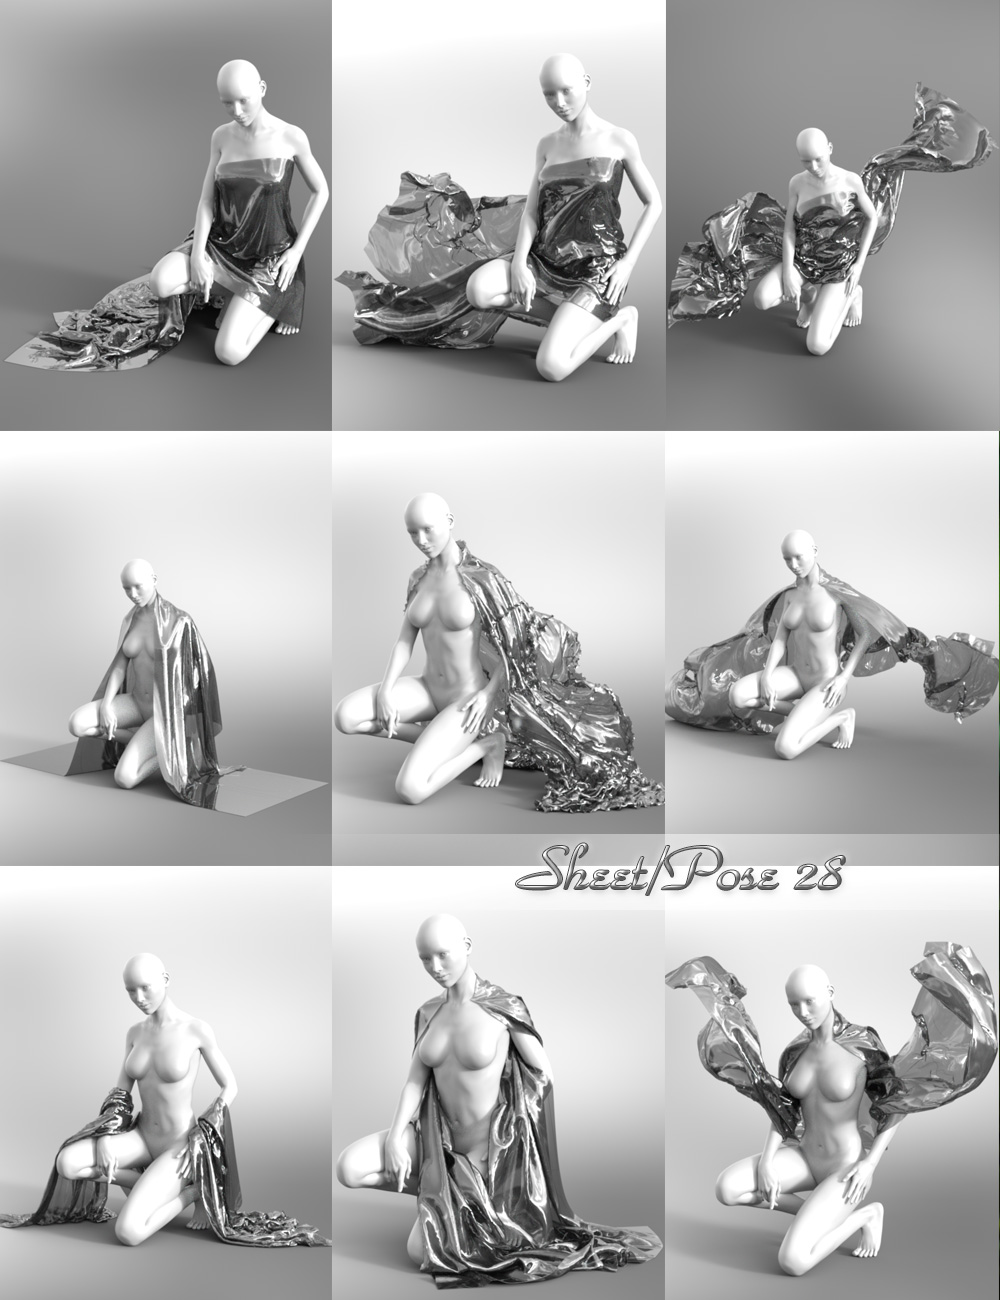 Shiny SheetZ II Genesis 3 Female(s) by: Jepe, 3D Models by Daz 3D